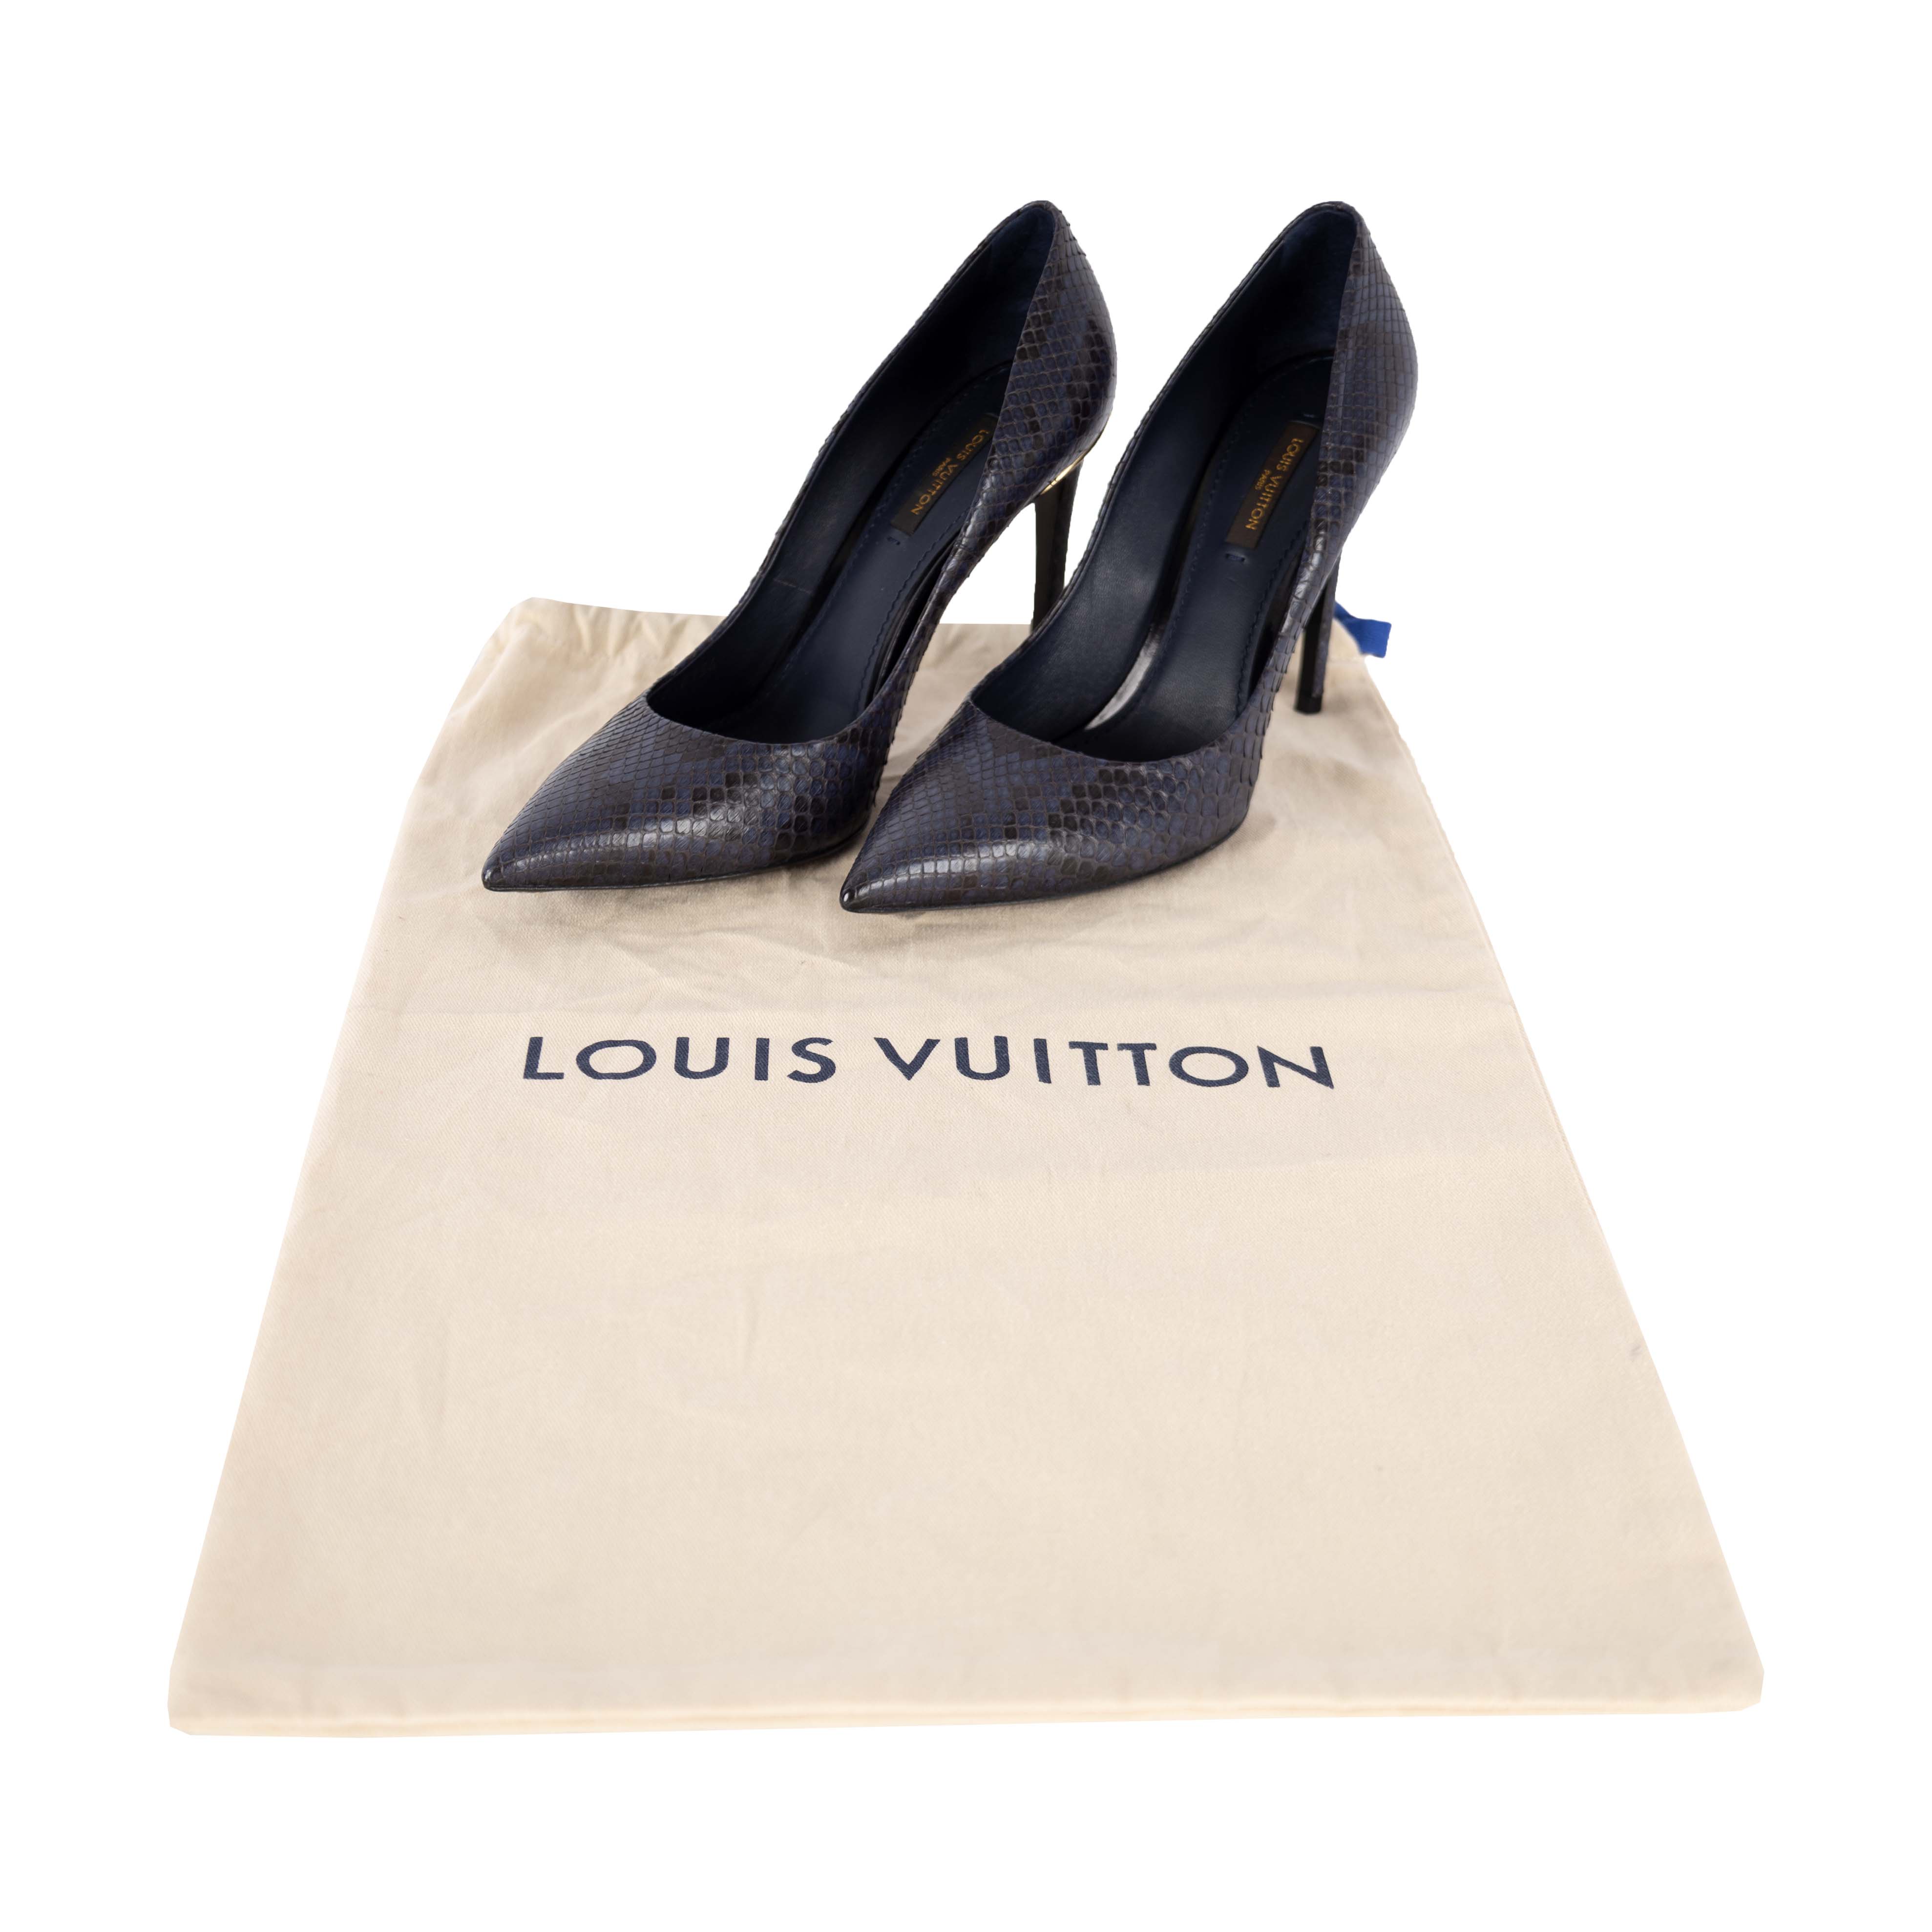 Louis Vuitton Cherie Pump BLACK. Size 36.5